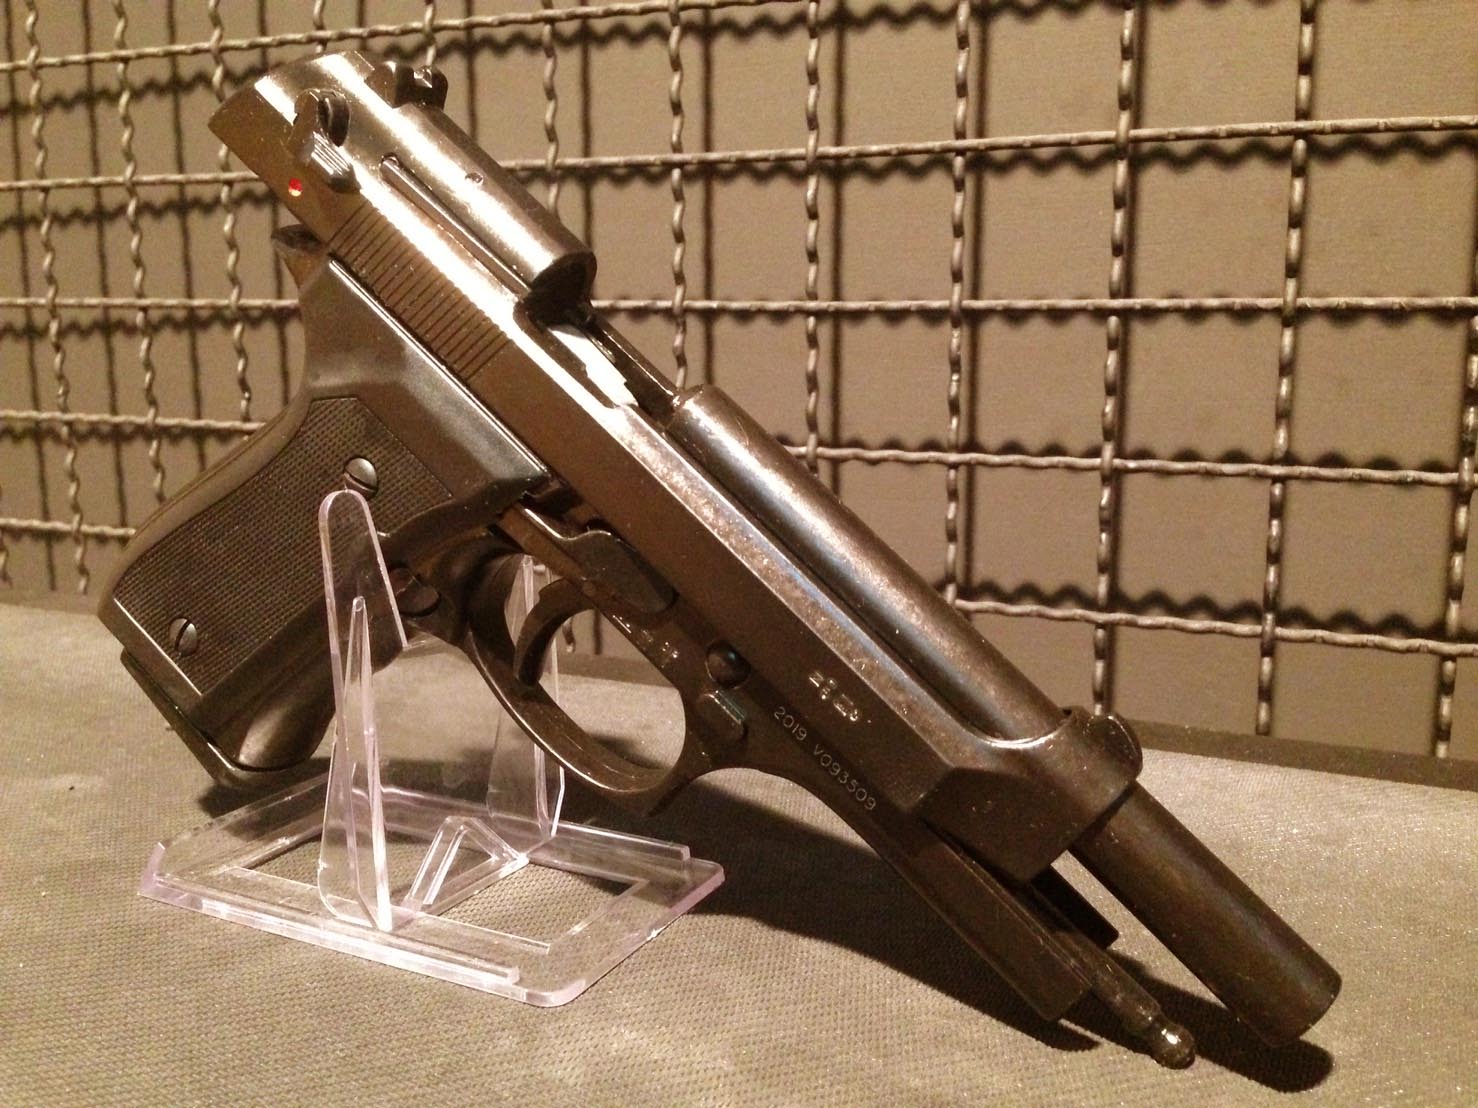 มุมมองเพิ่มเติมของสินค้า Blank แบลงค์กัน M92 fs ปืนสุดคลาสสิคยุค 90 หรือที่เรียกขานกันว่า ปืนพระเอก ต้นตำรับจากอิตาลี สีรมดำด้าน สวย ดุ ดิบ คลาสสิค Made in Italy